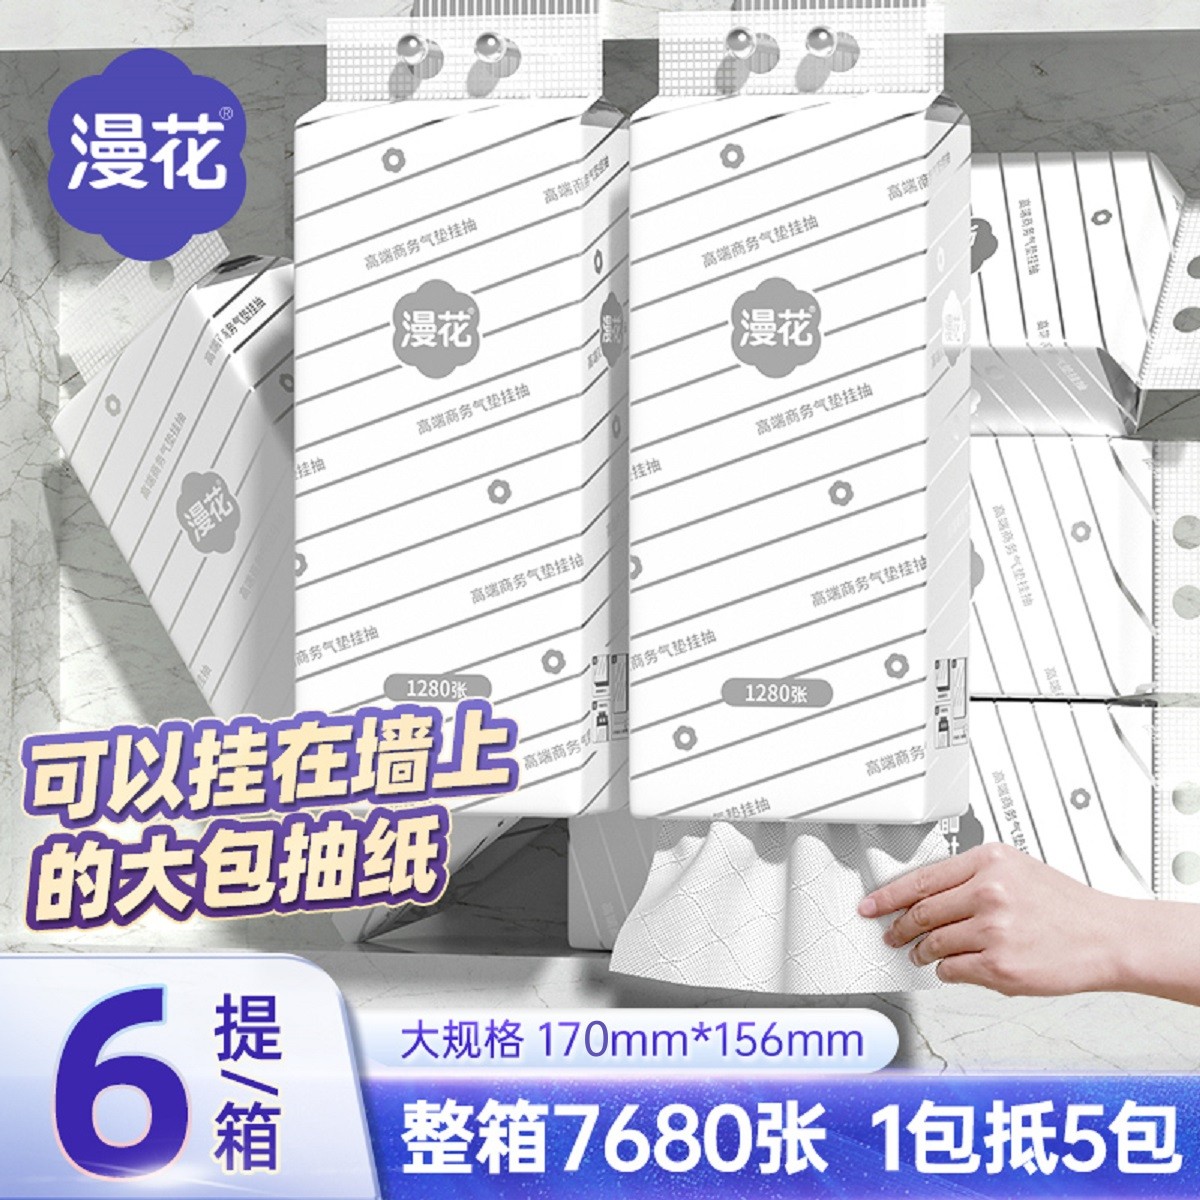 【1280张/提】悬挂式纸巾抽纸实惠餐巾纸饭店酒店商用卫生纸抽